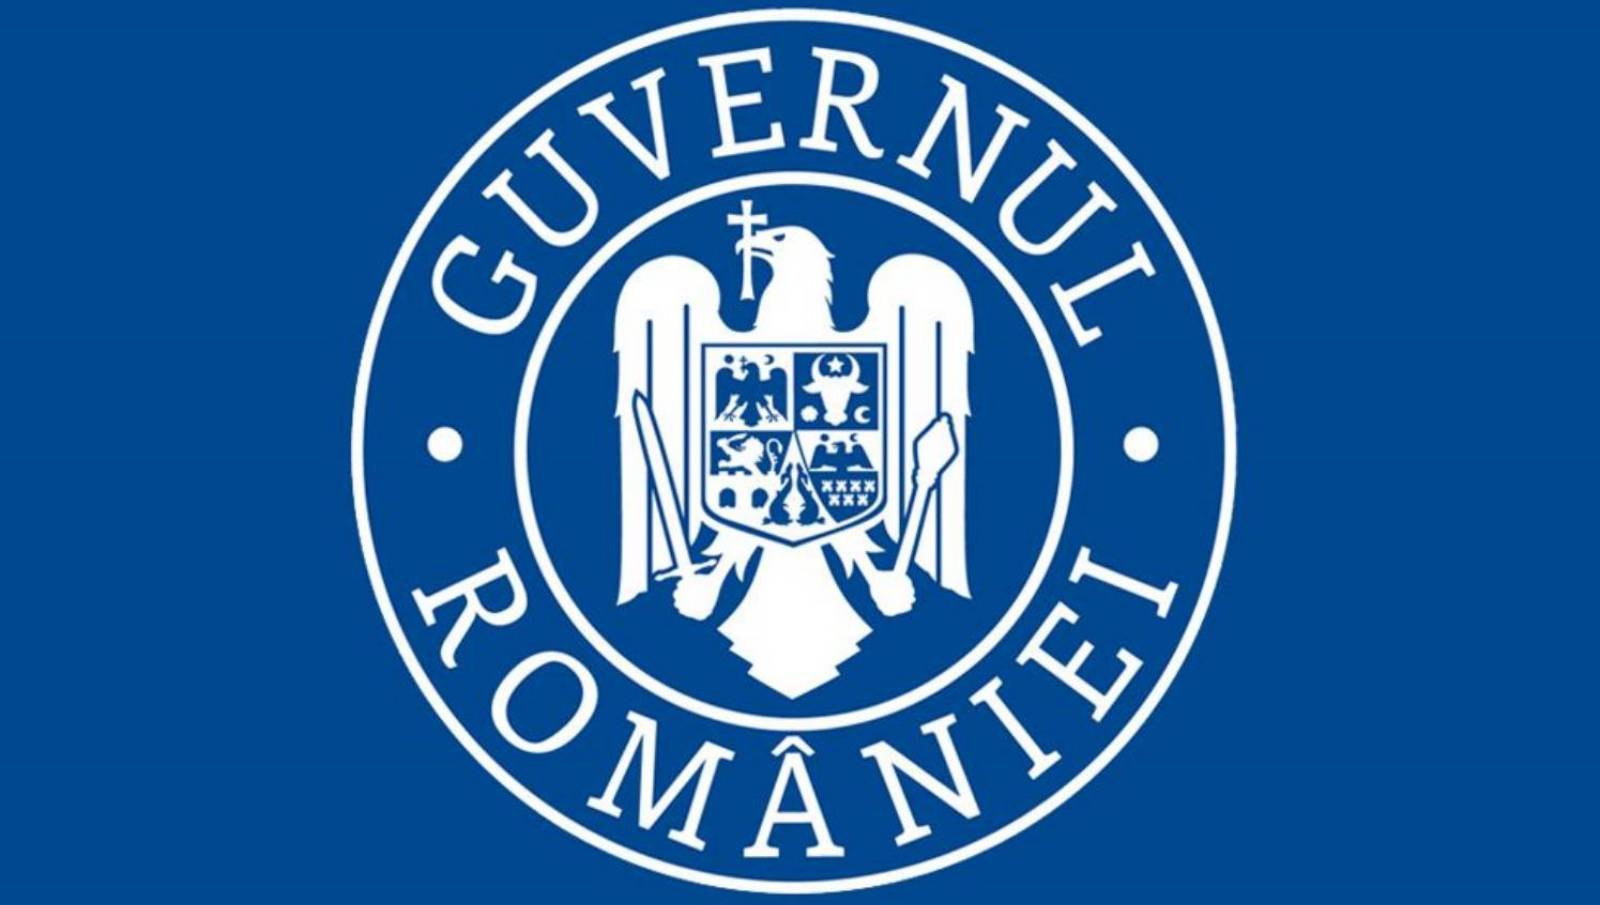 De coronavirusgegevens van de Roemeense overheid